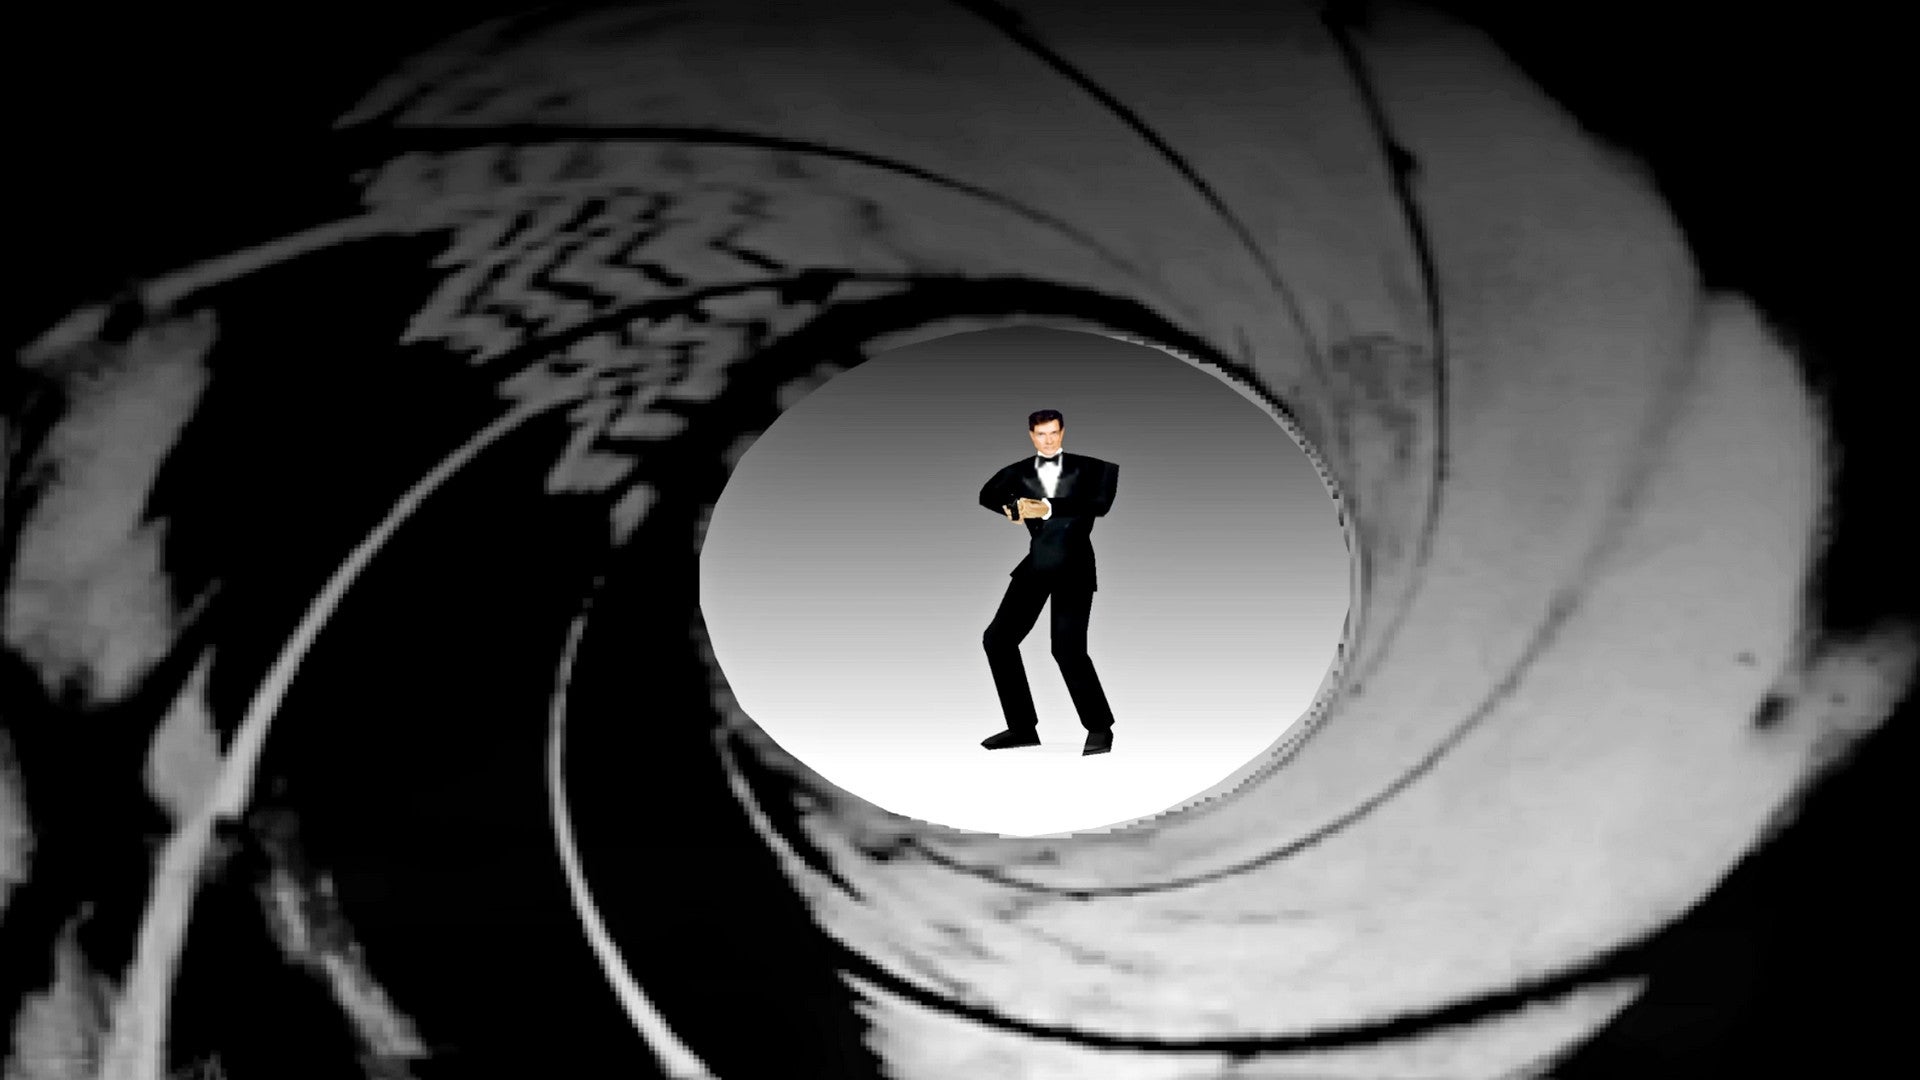 Bilder zu Der Spion, der mich liebte: Mod krempelt GoldenEye 007 komplett um